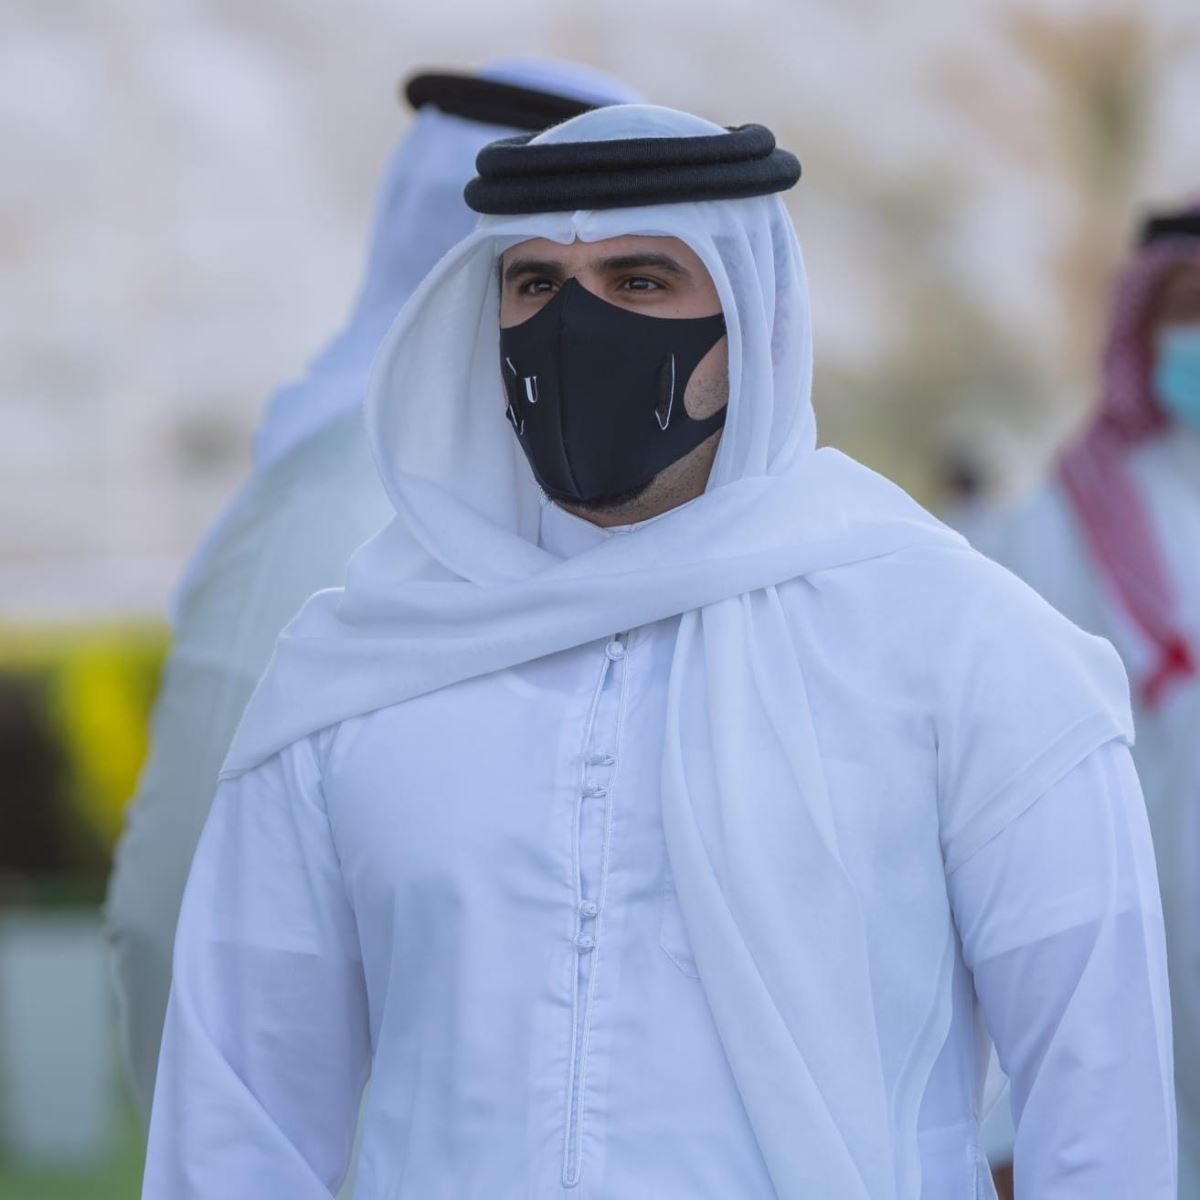 الشيخ عيسى بن سلمان: البحرين أثبتت قدرتها على تنظيم بطولات الخيل الدولية